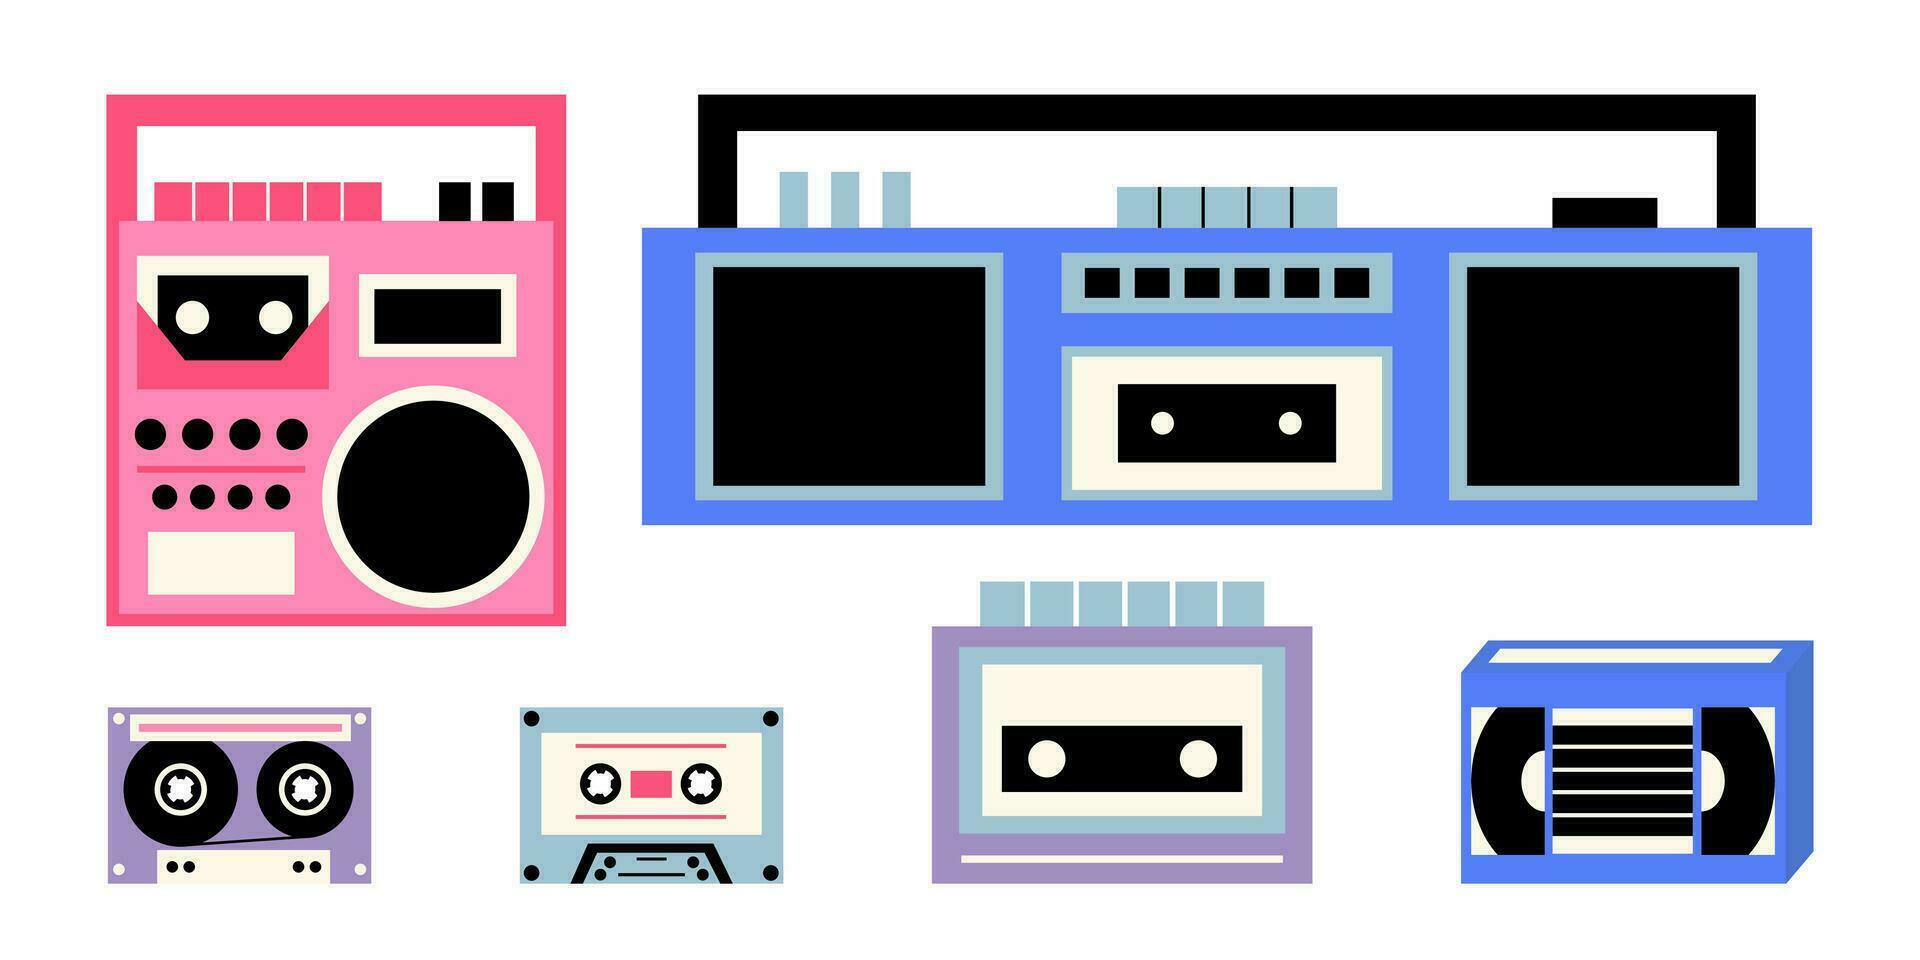 vettore classico anni 80 e anni 90 musica gadget impostare. piatto stile retrò elementi anni 90 e anni 80. vettore boombox, nastro registratore, disco giocatore, Audio cassetta, vhs cassetta